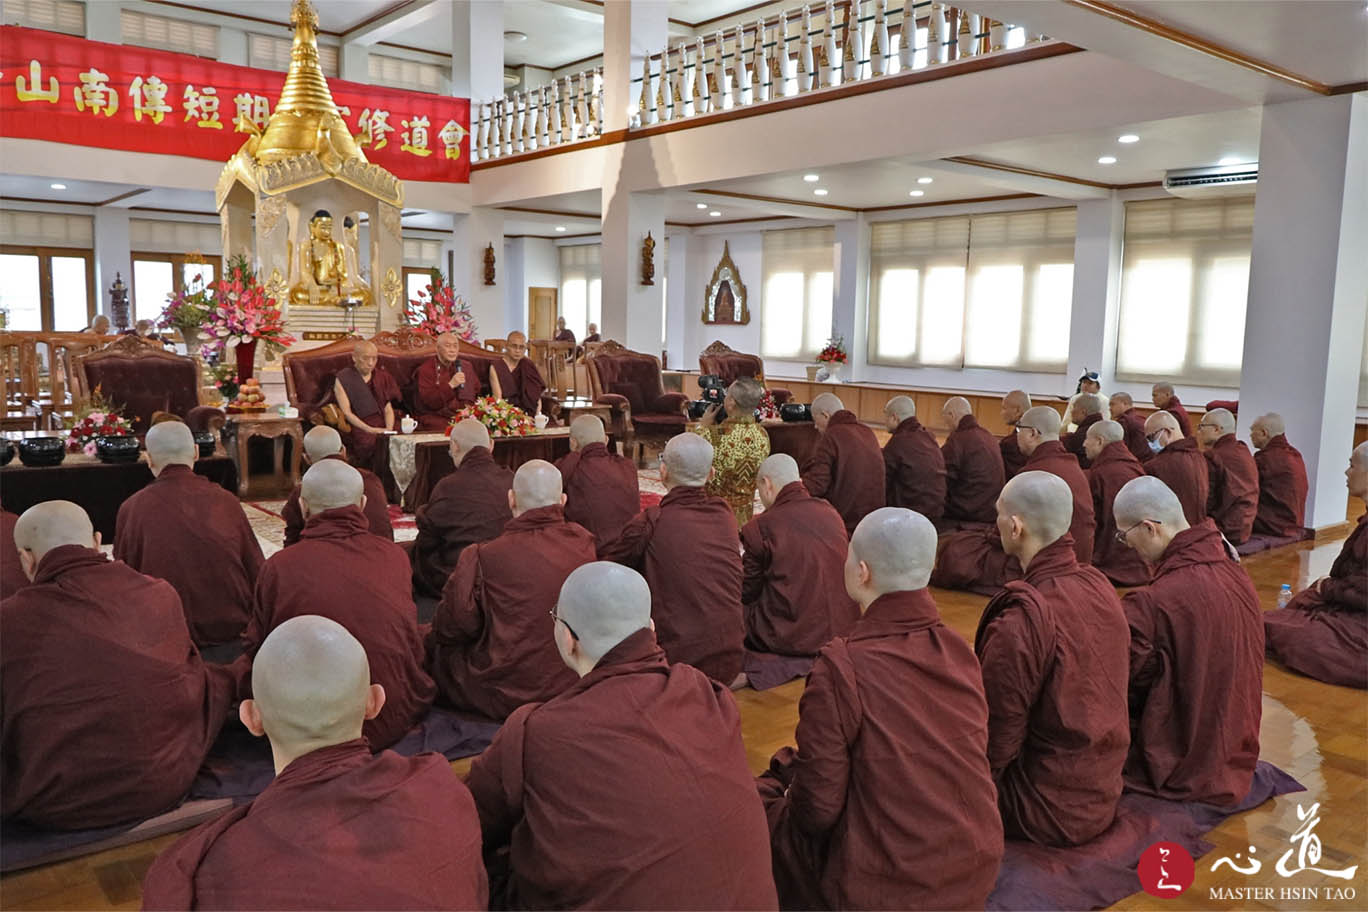 心道法师于缅甸仰光南传短期出家修道会开示